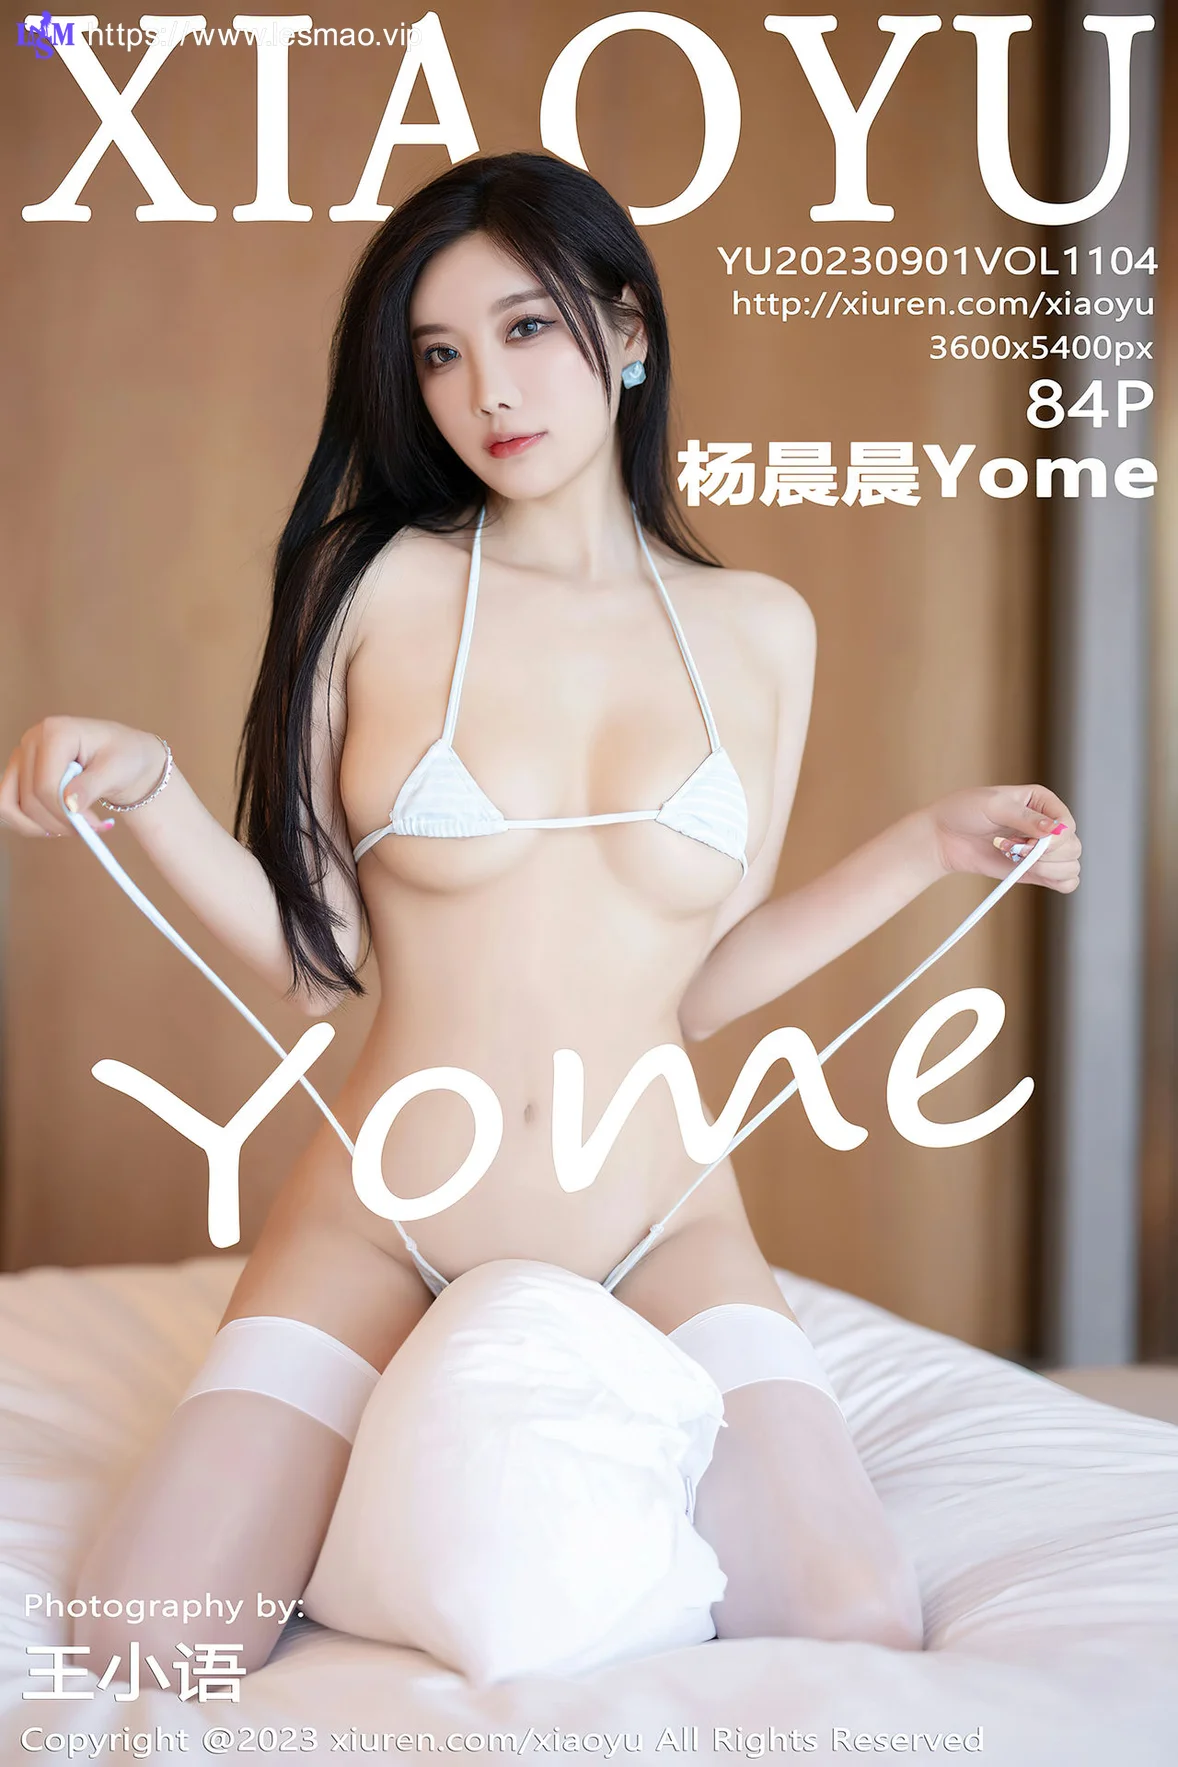 XIAOYU  语画  Vol.1104  杨晨晨Yome 诱人白色丝袜性感写真1 - 5